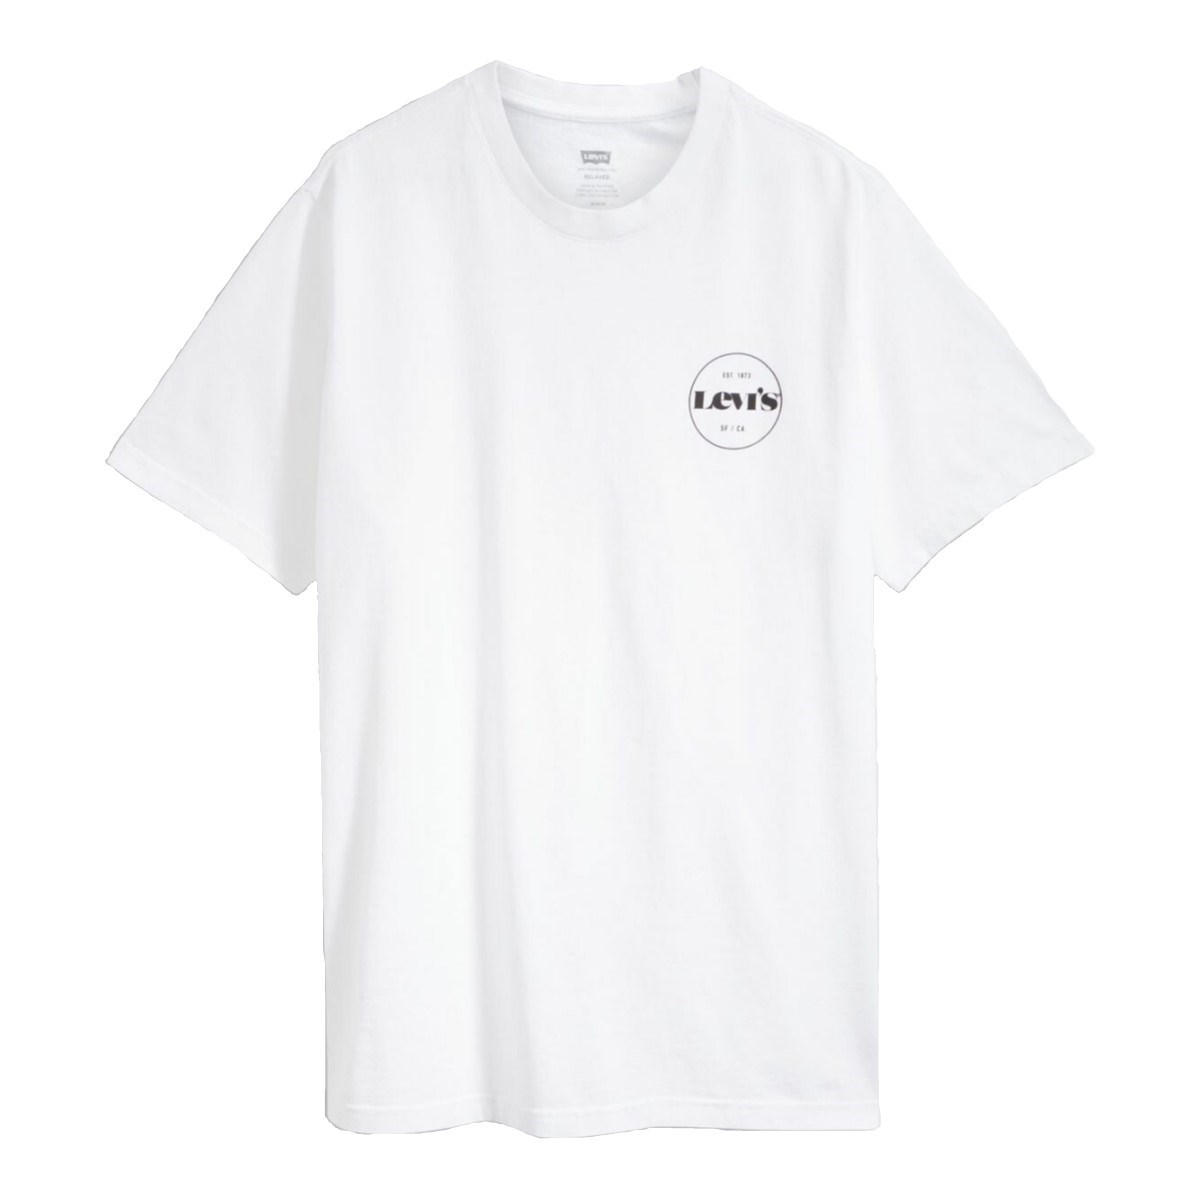 Levis Erkek T-Shirt 16143-0237 